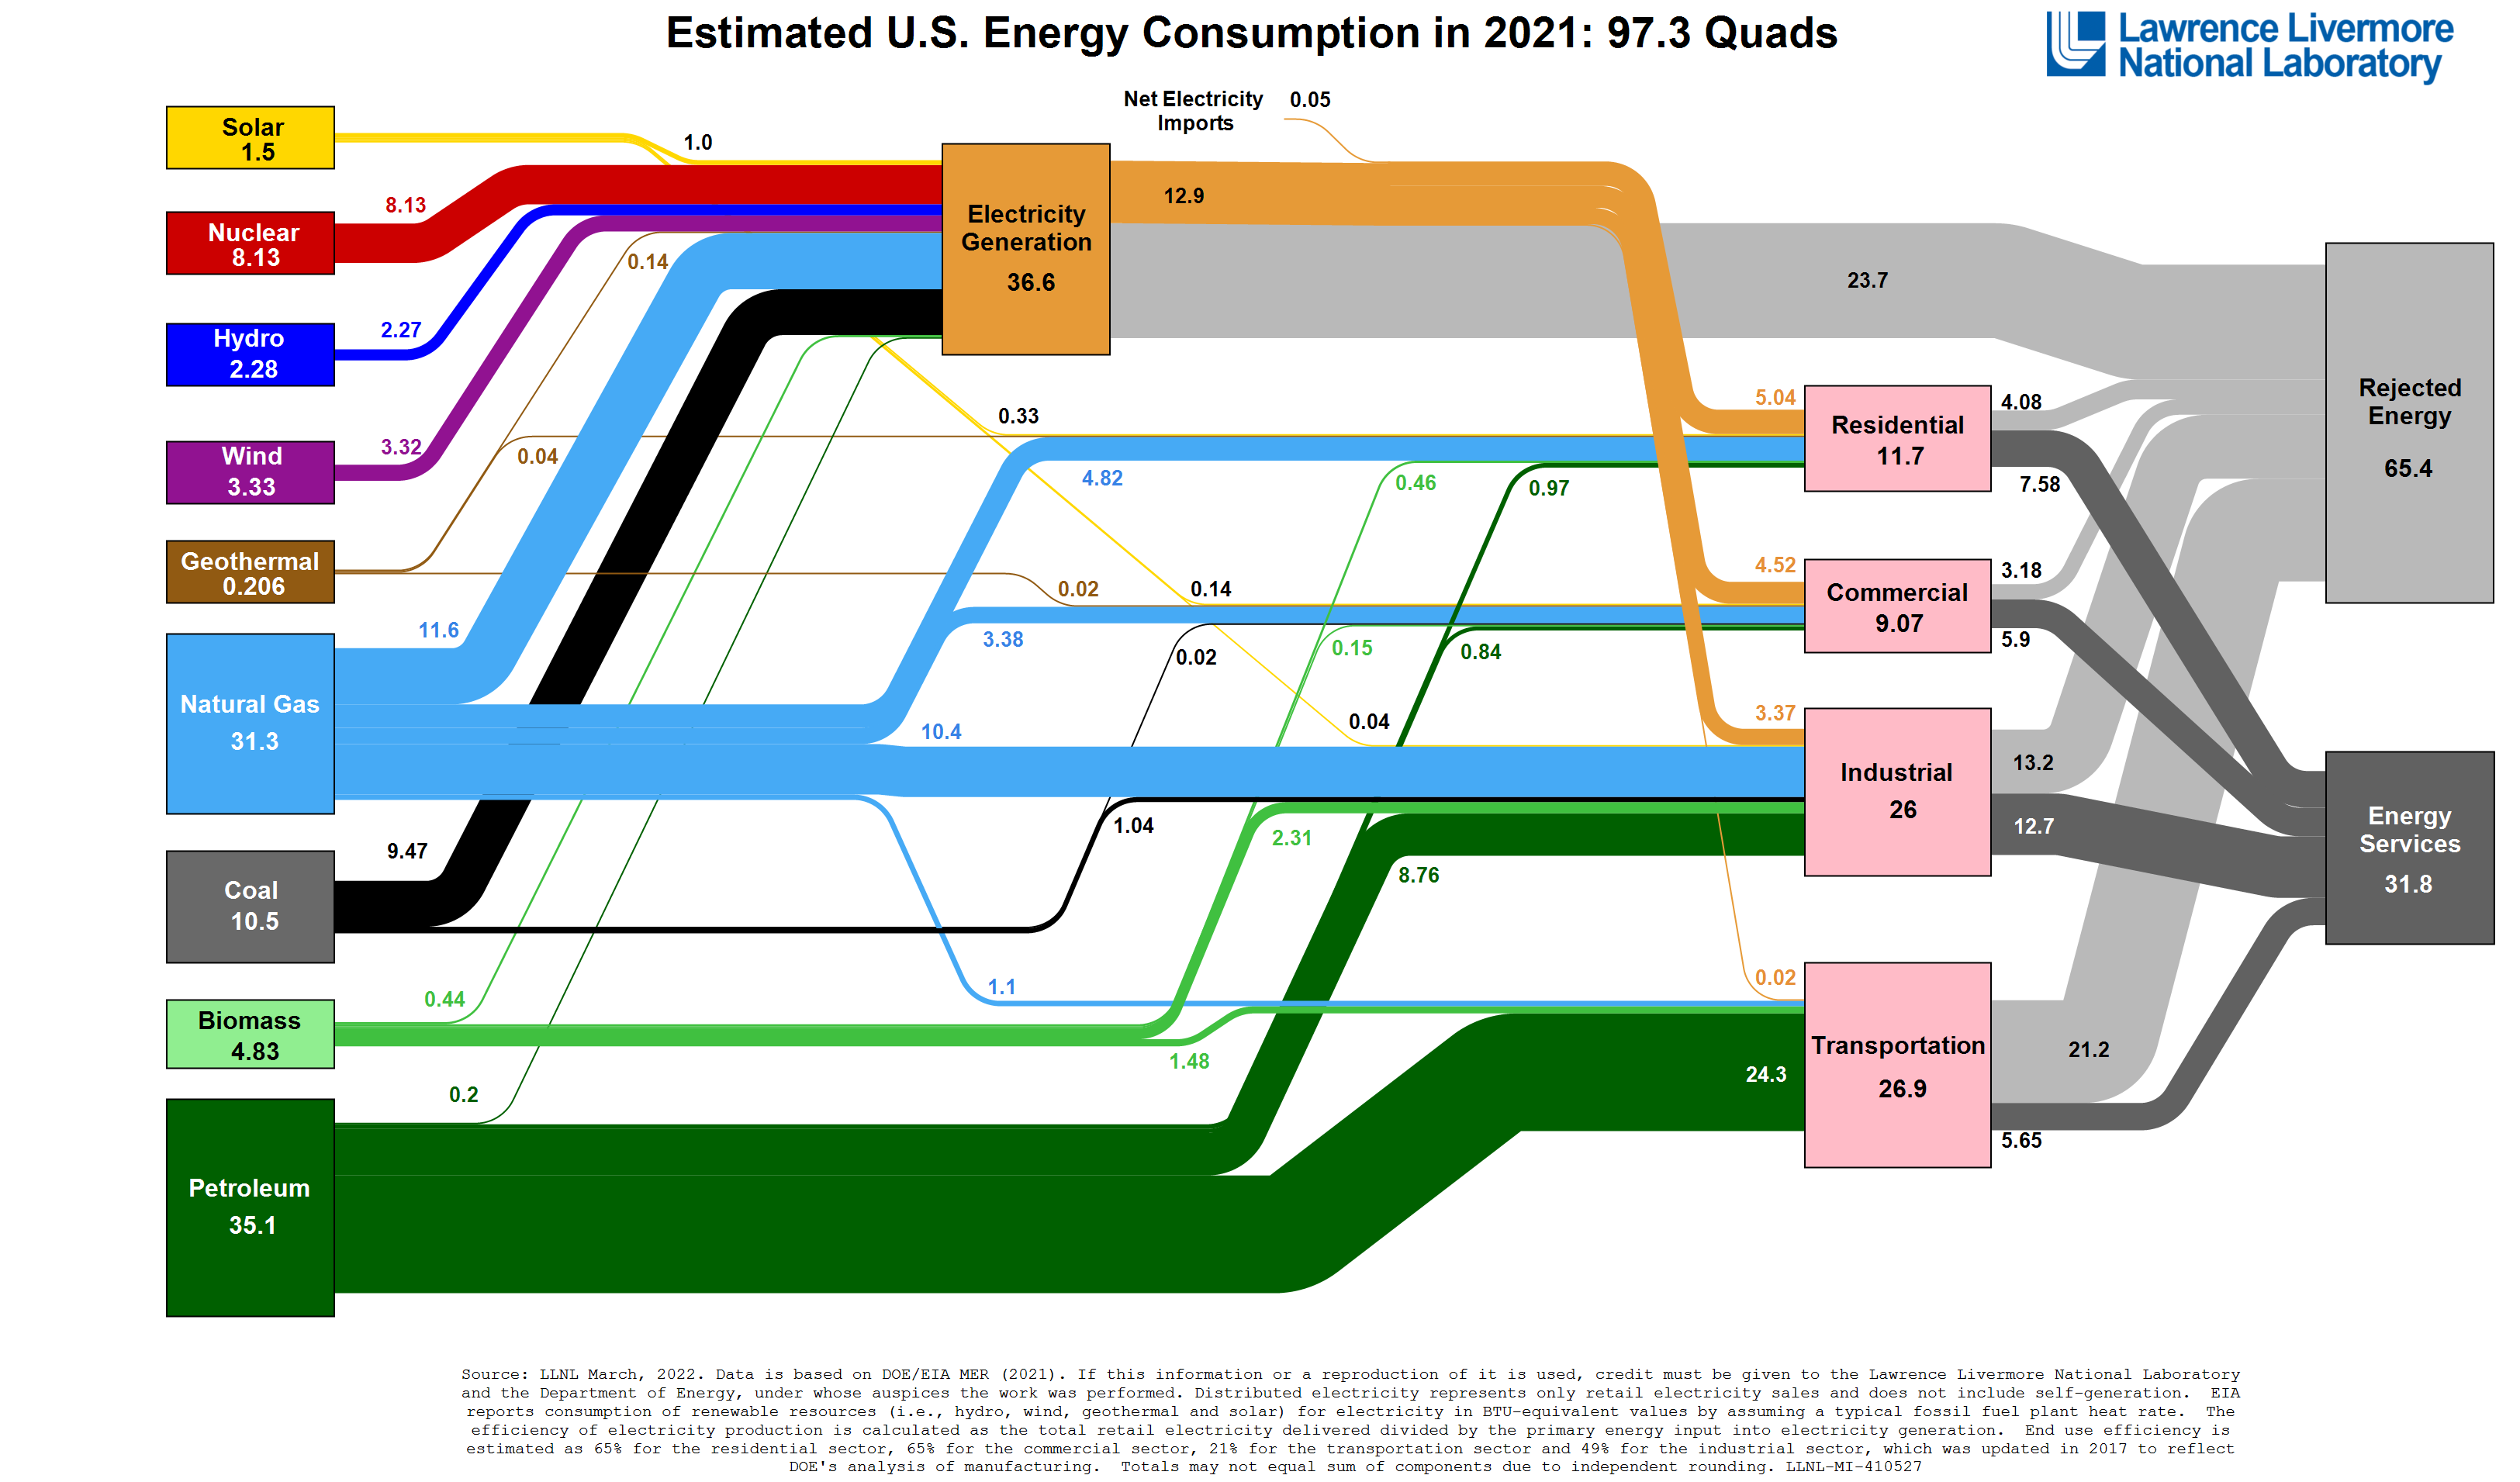 Estimated U.S. Energy Consumption in 2021: 97.3 Quads